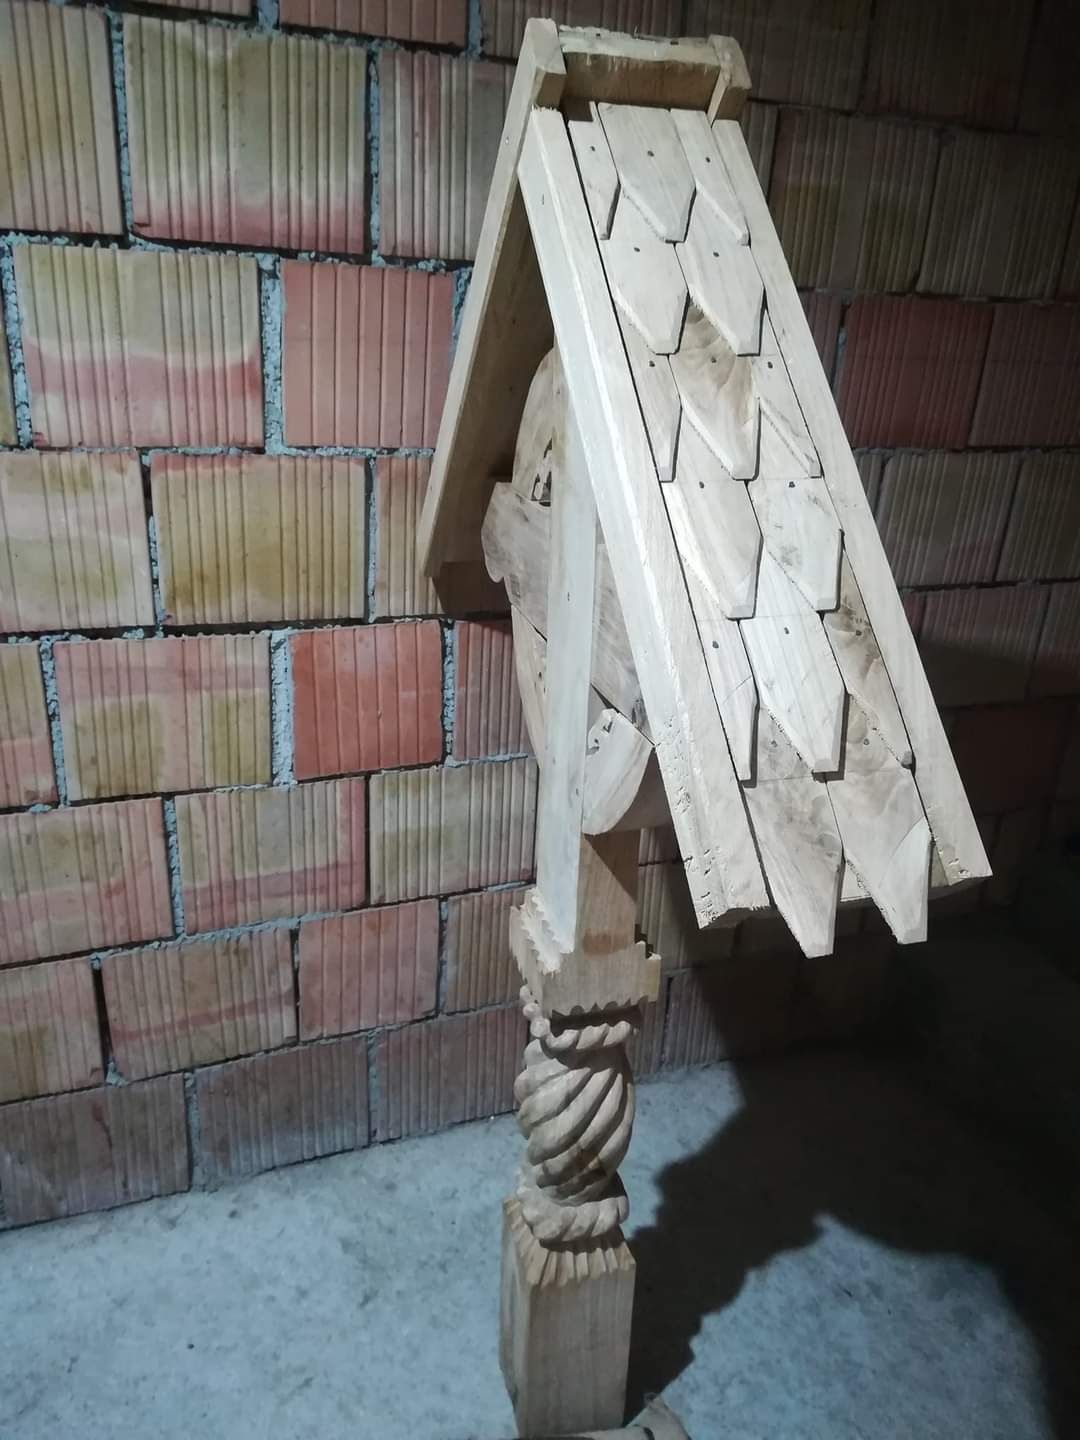 Crucia din stejar sculptata preț 1000 lei. Detali in privat